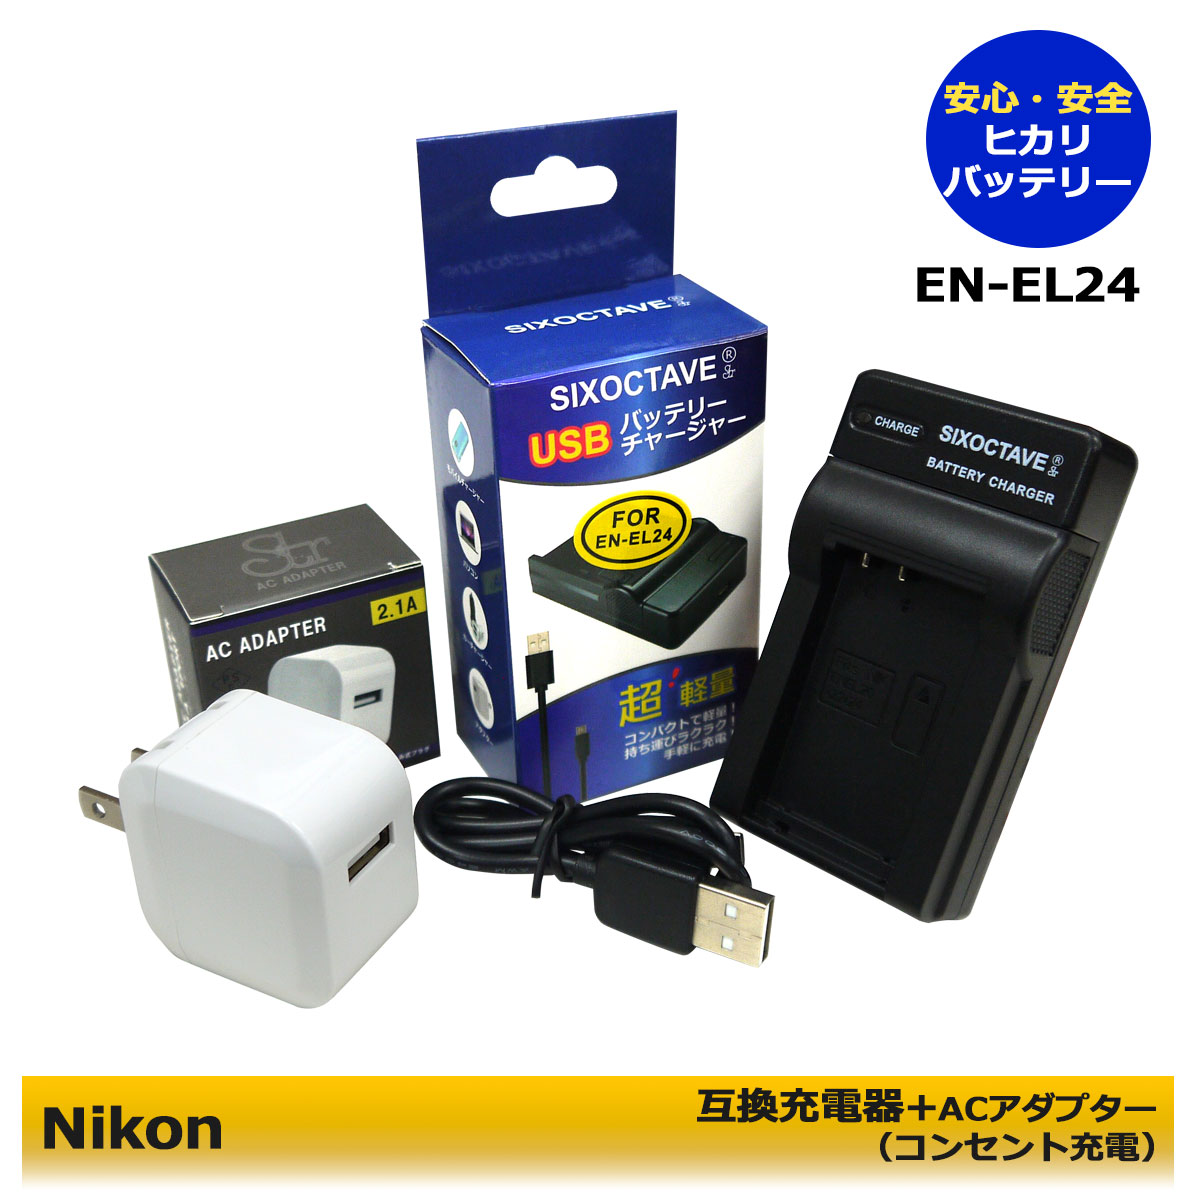 セールSALE％OFF ニコン EN-EL24 ENEL24 Micro USB付き 急速充電器 互換品